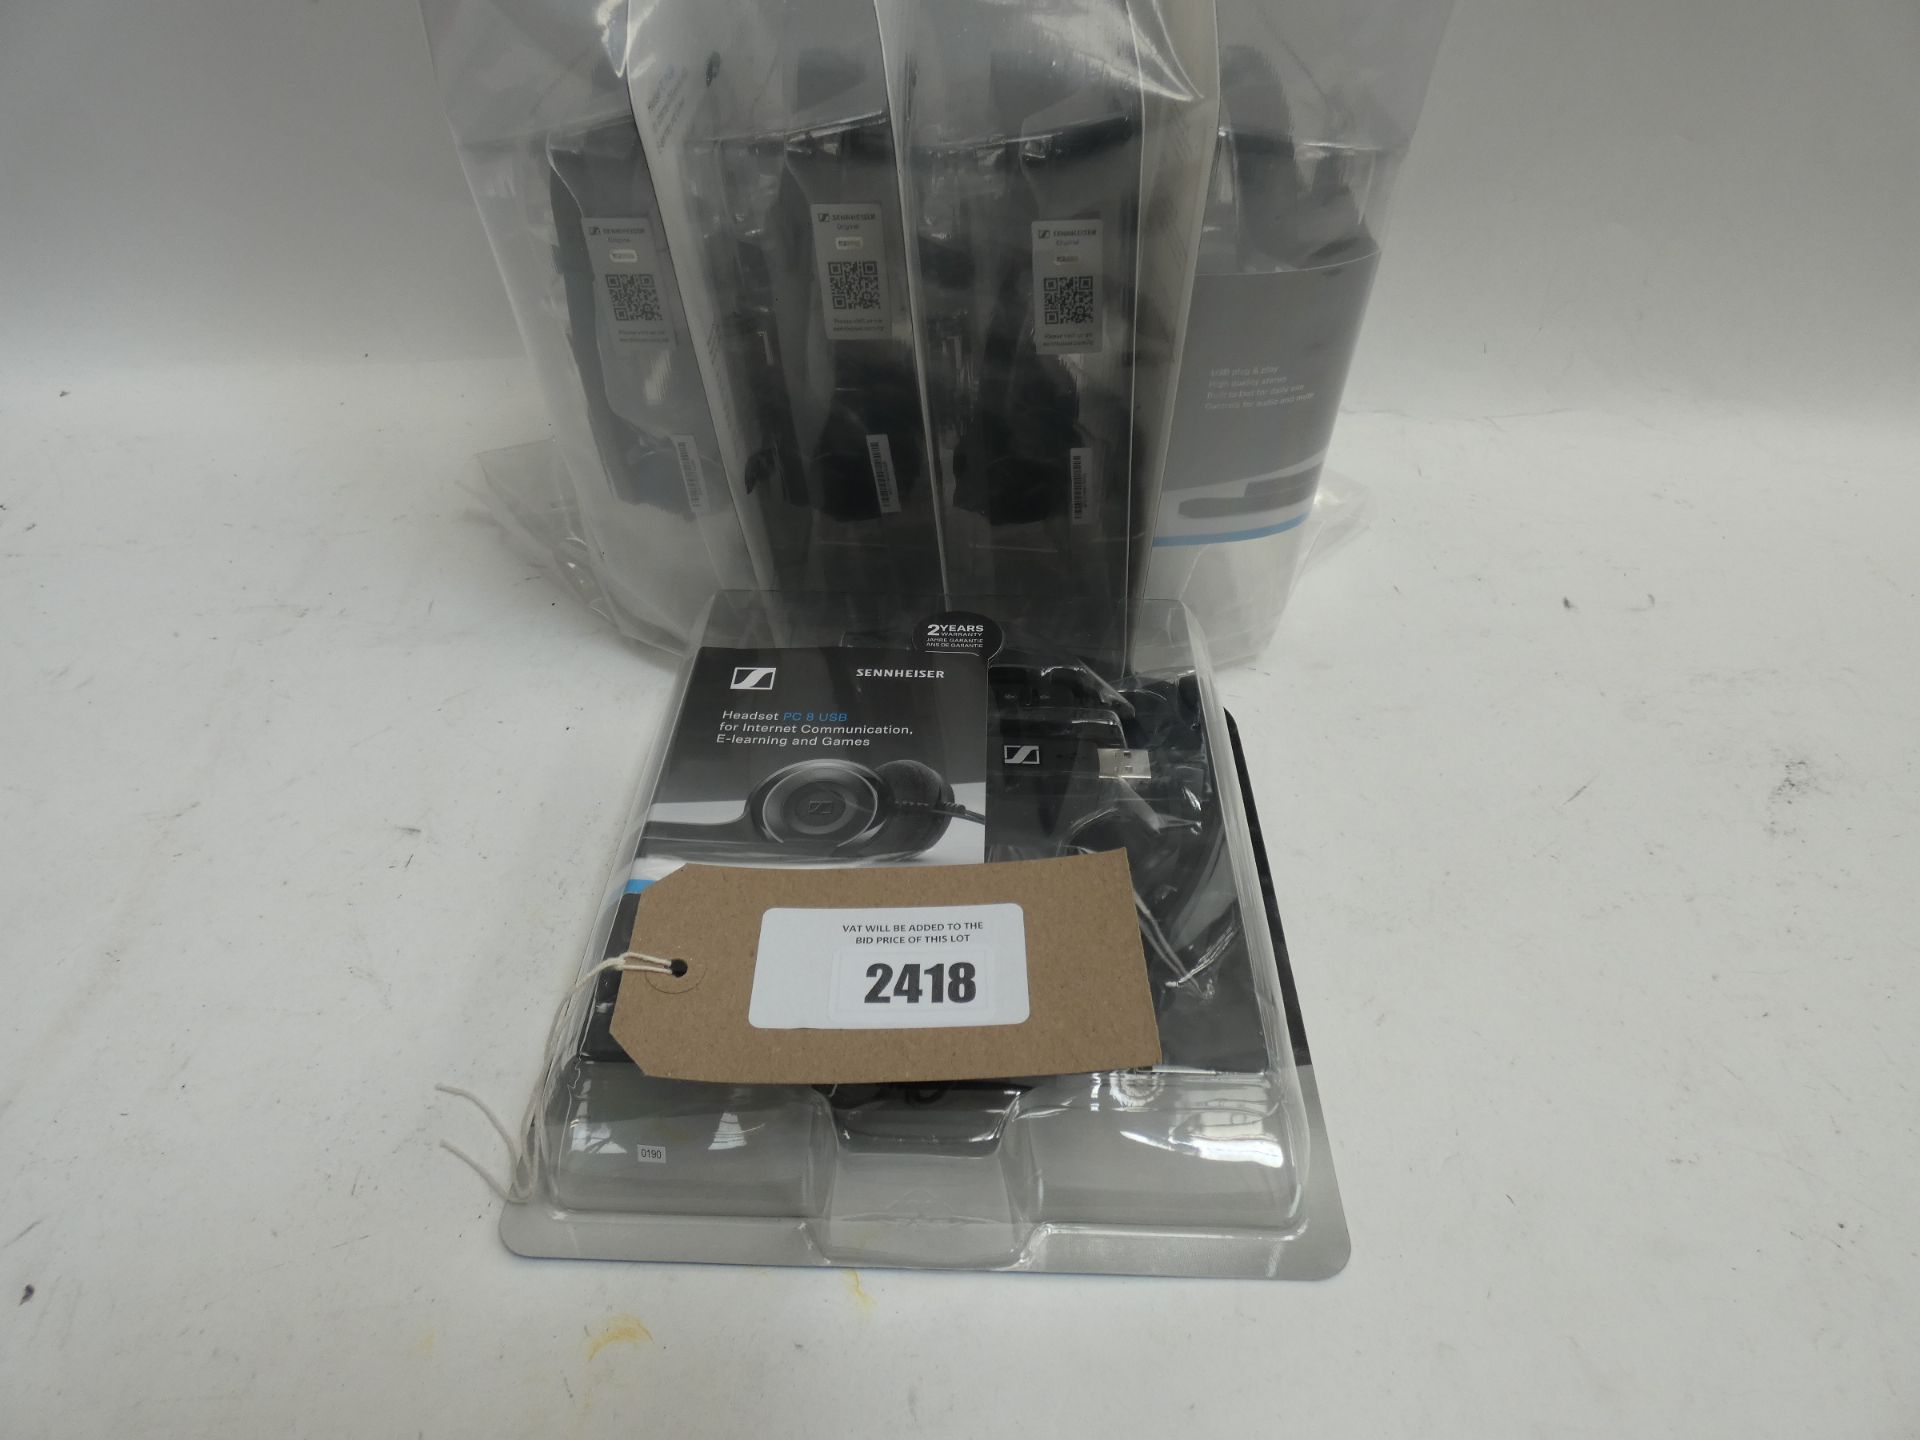 Bag of Five Sennheiser PC 8 usb headsets in blister packs.